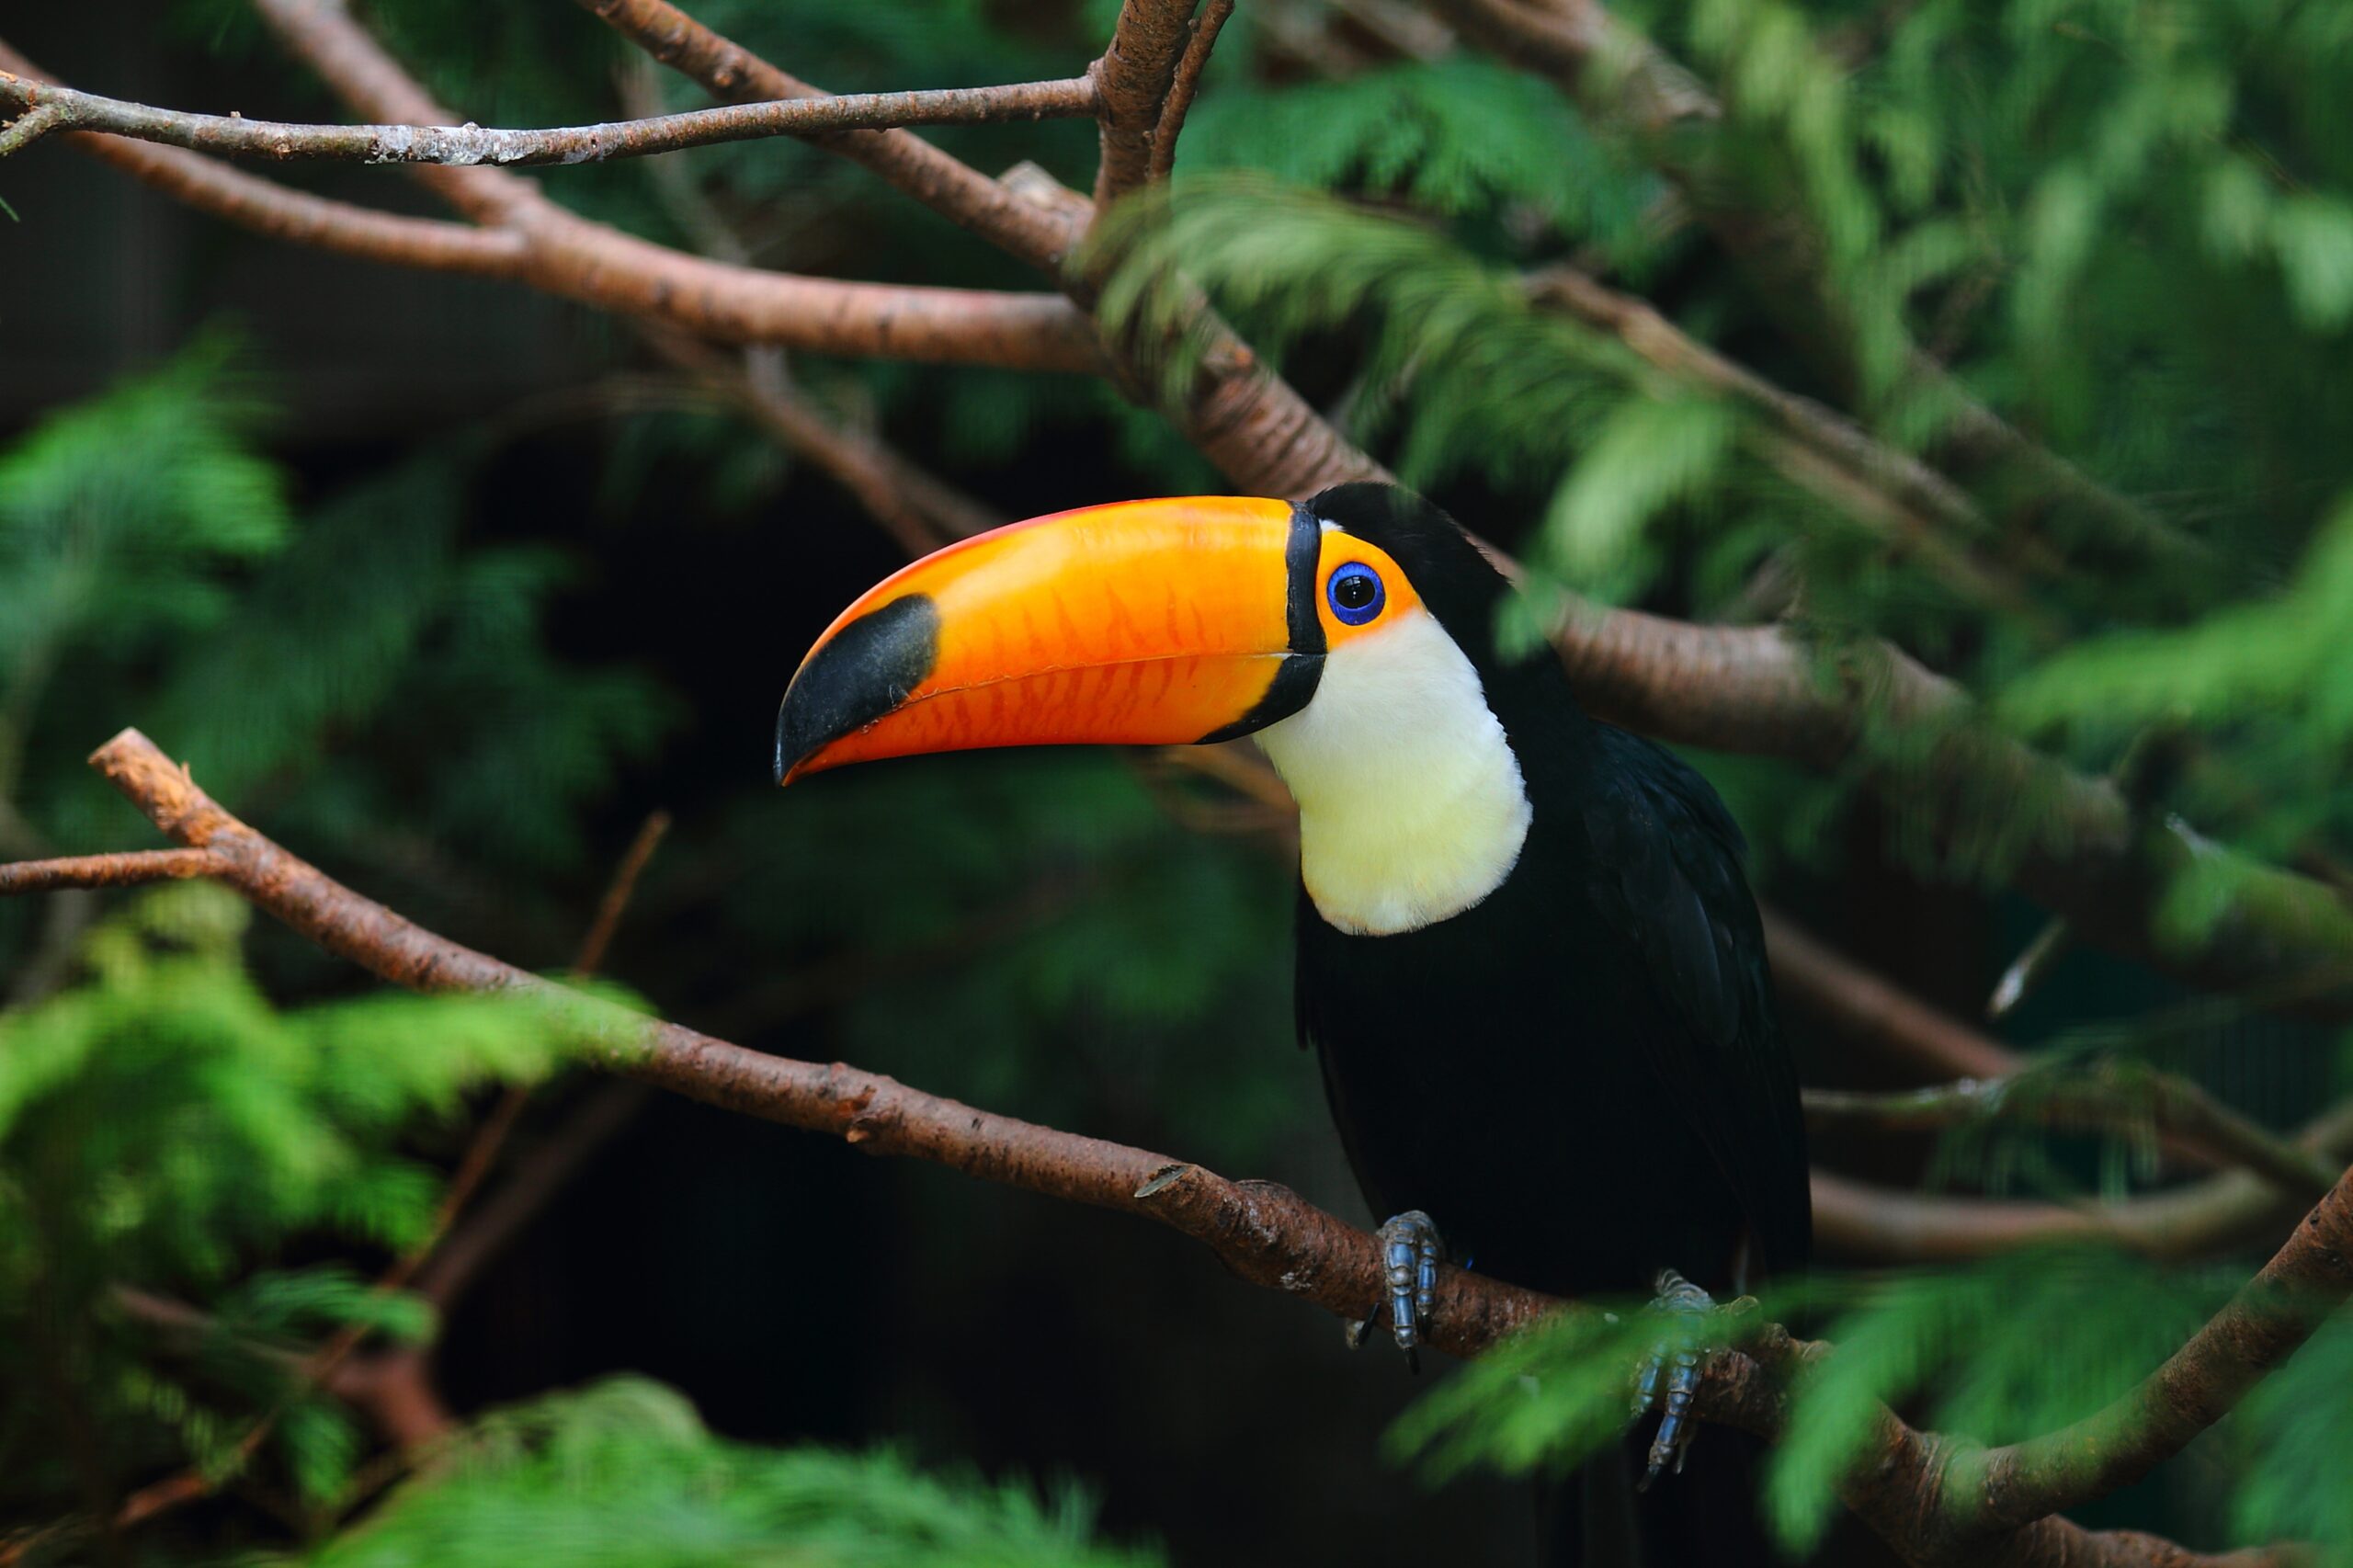 Descubre el fascinante mundo de la Observación de Aves en tu próximo paseo